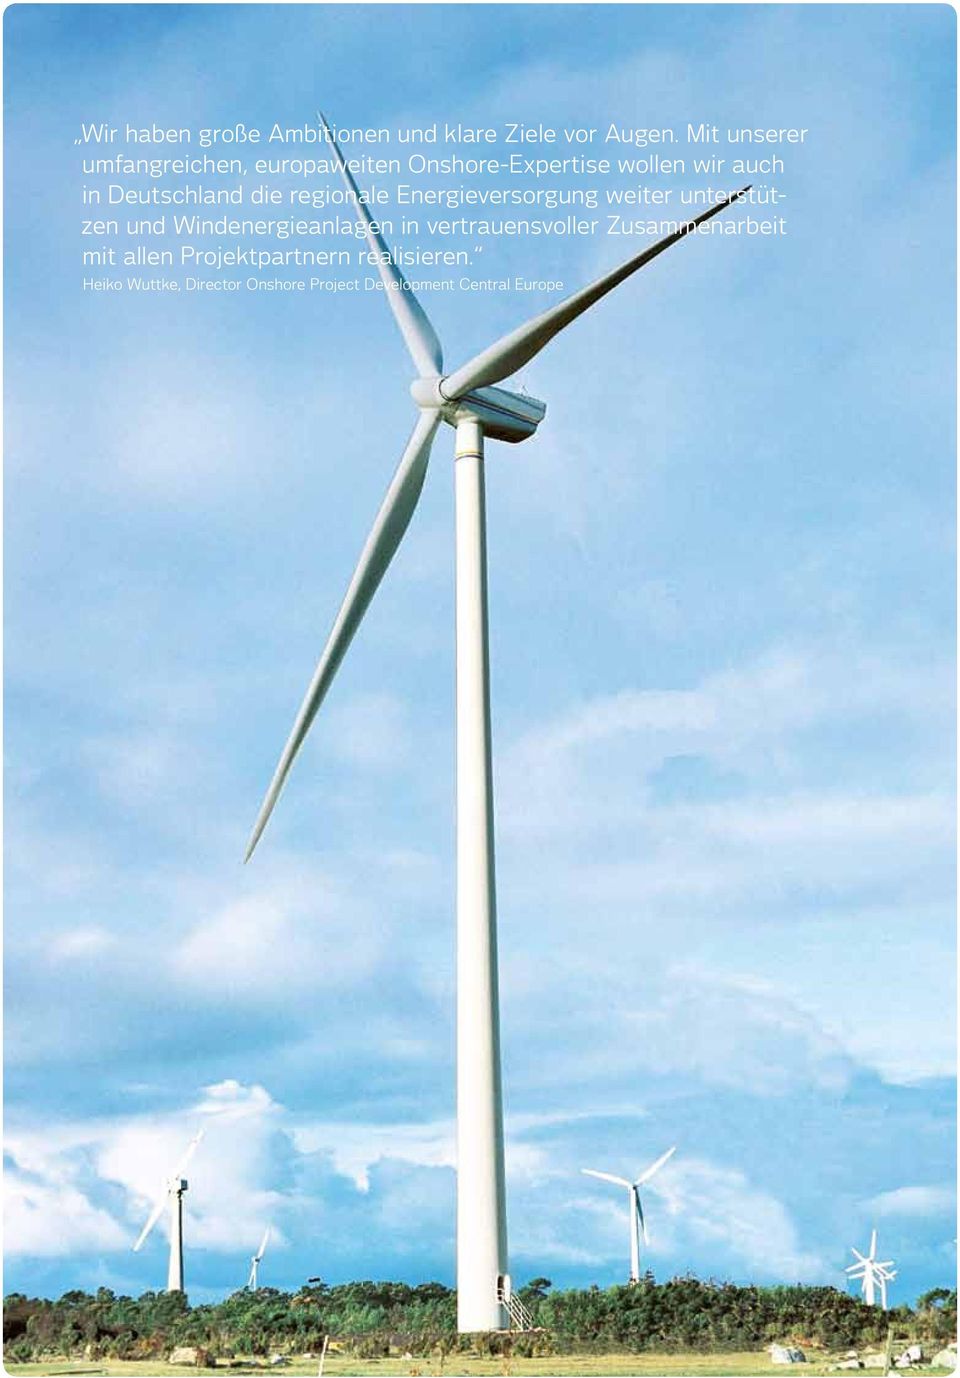 regionale Energieversorgung weiter unterstützen und Windenergieanlagen in vertrauensvoller